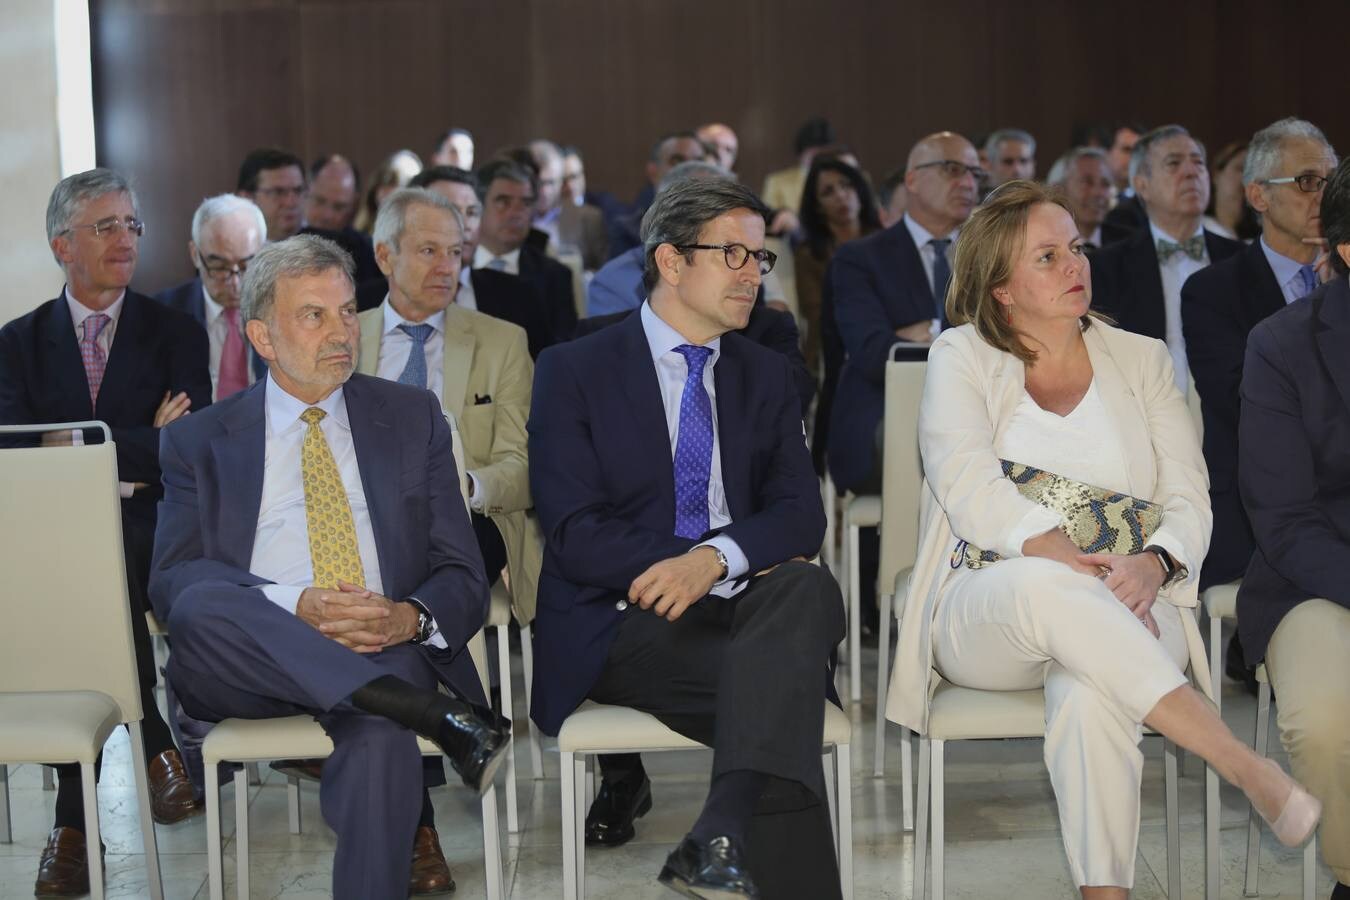 La presentación del Especial «Economía Andaluza» de ABC, en imágenes